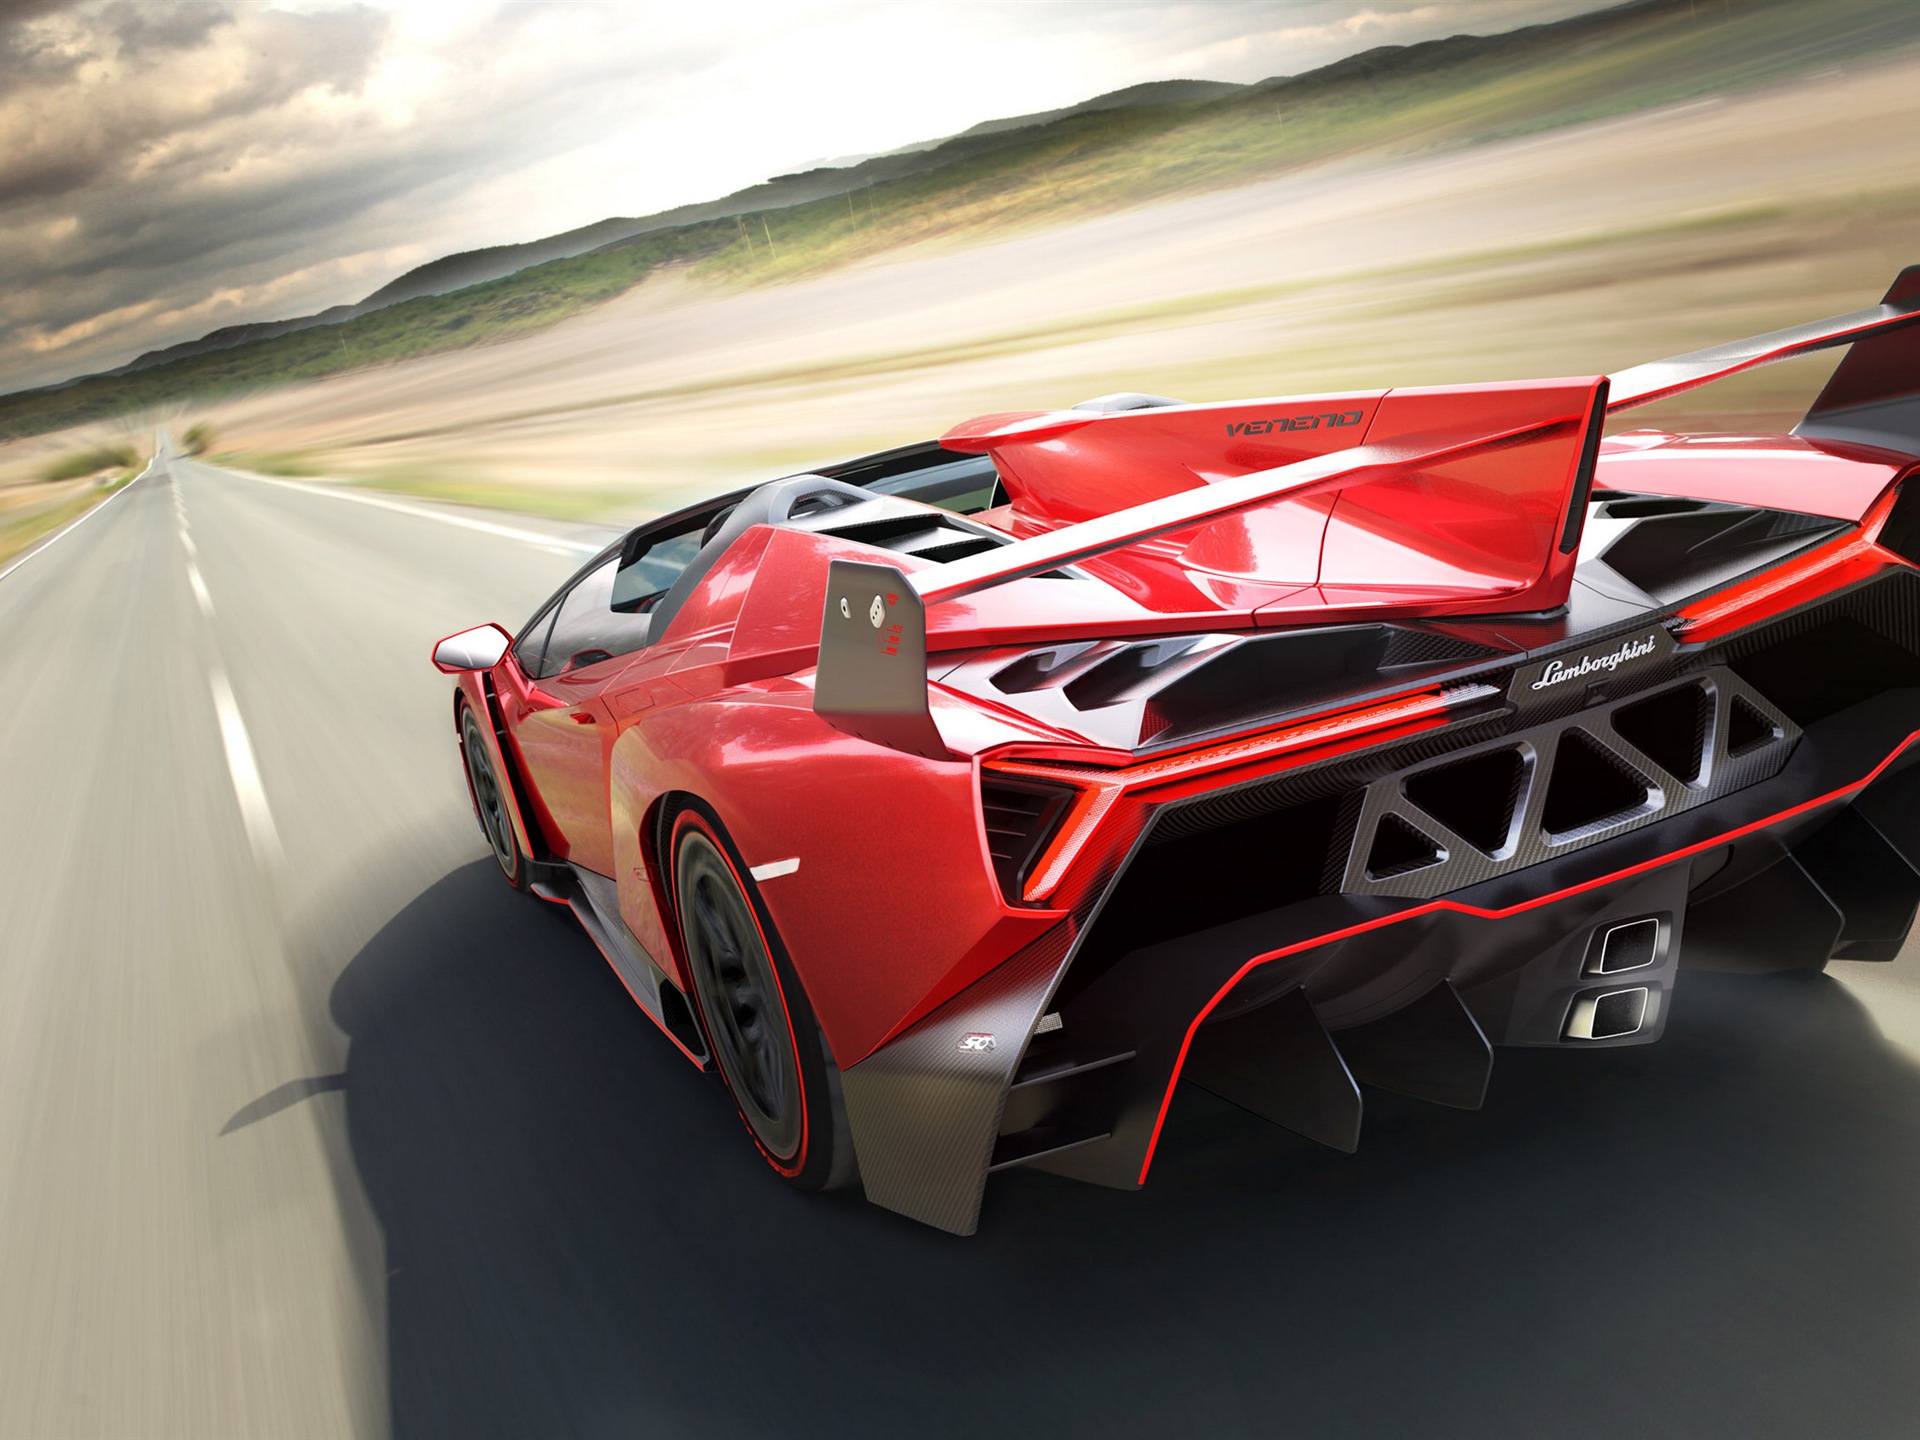 2014 Lamborghini Veneno Roadster red supercar HD wallpapers #2 - 1920x1440